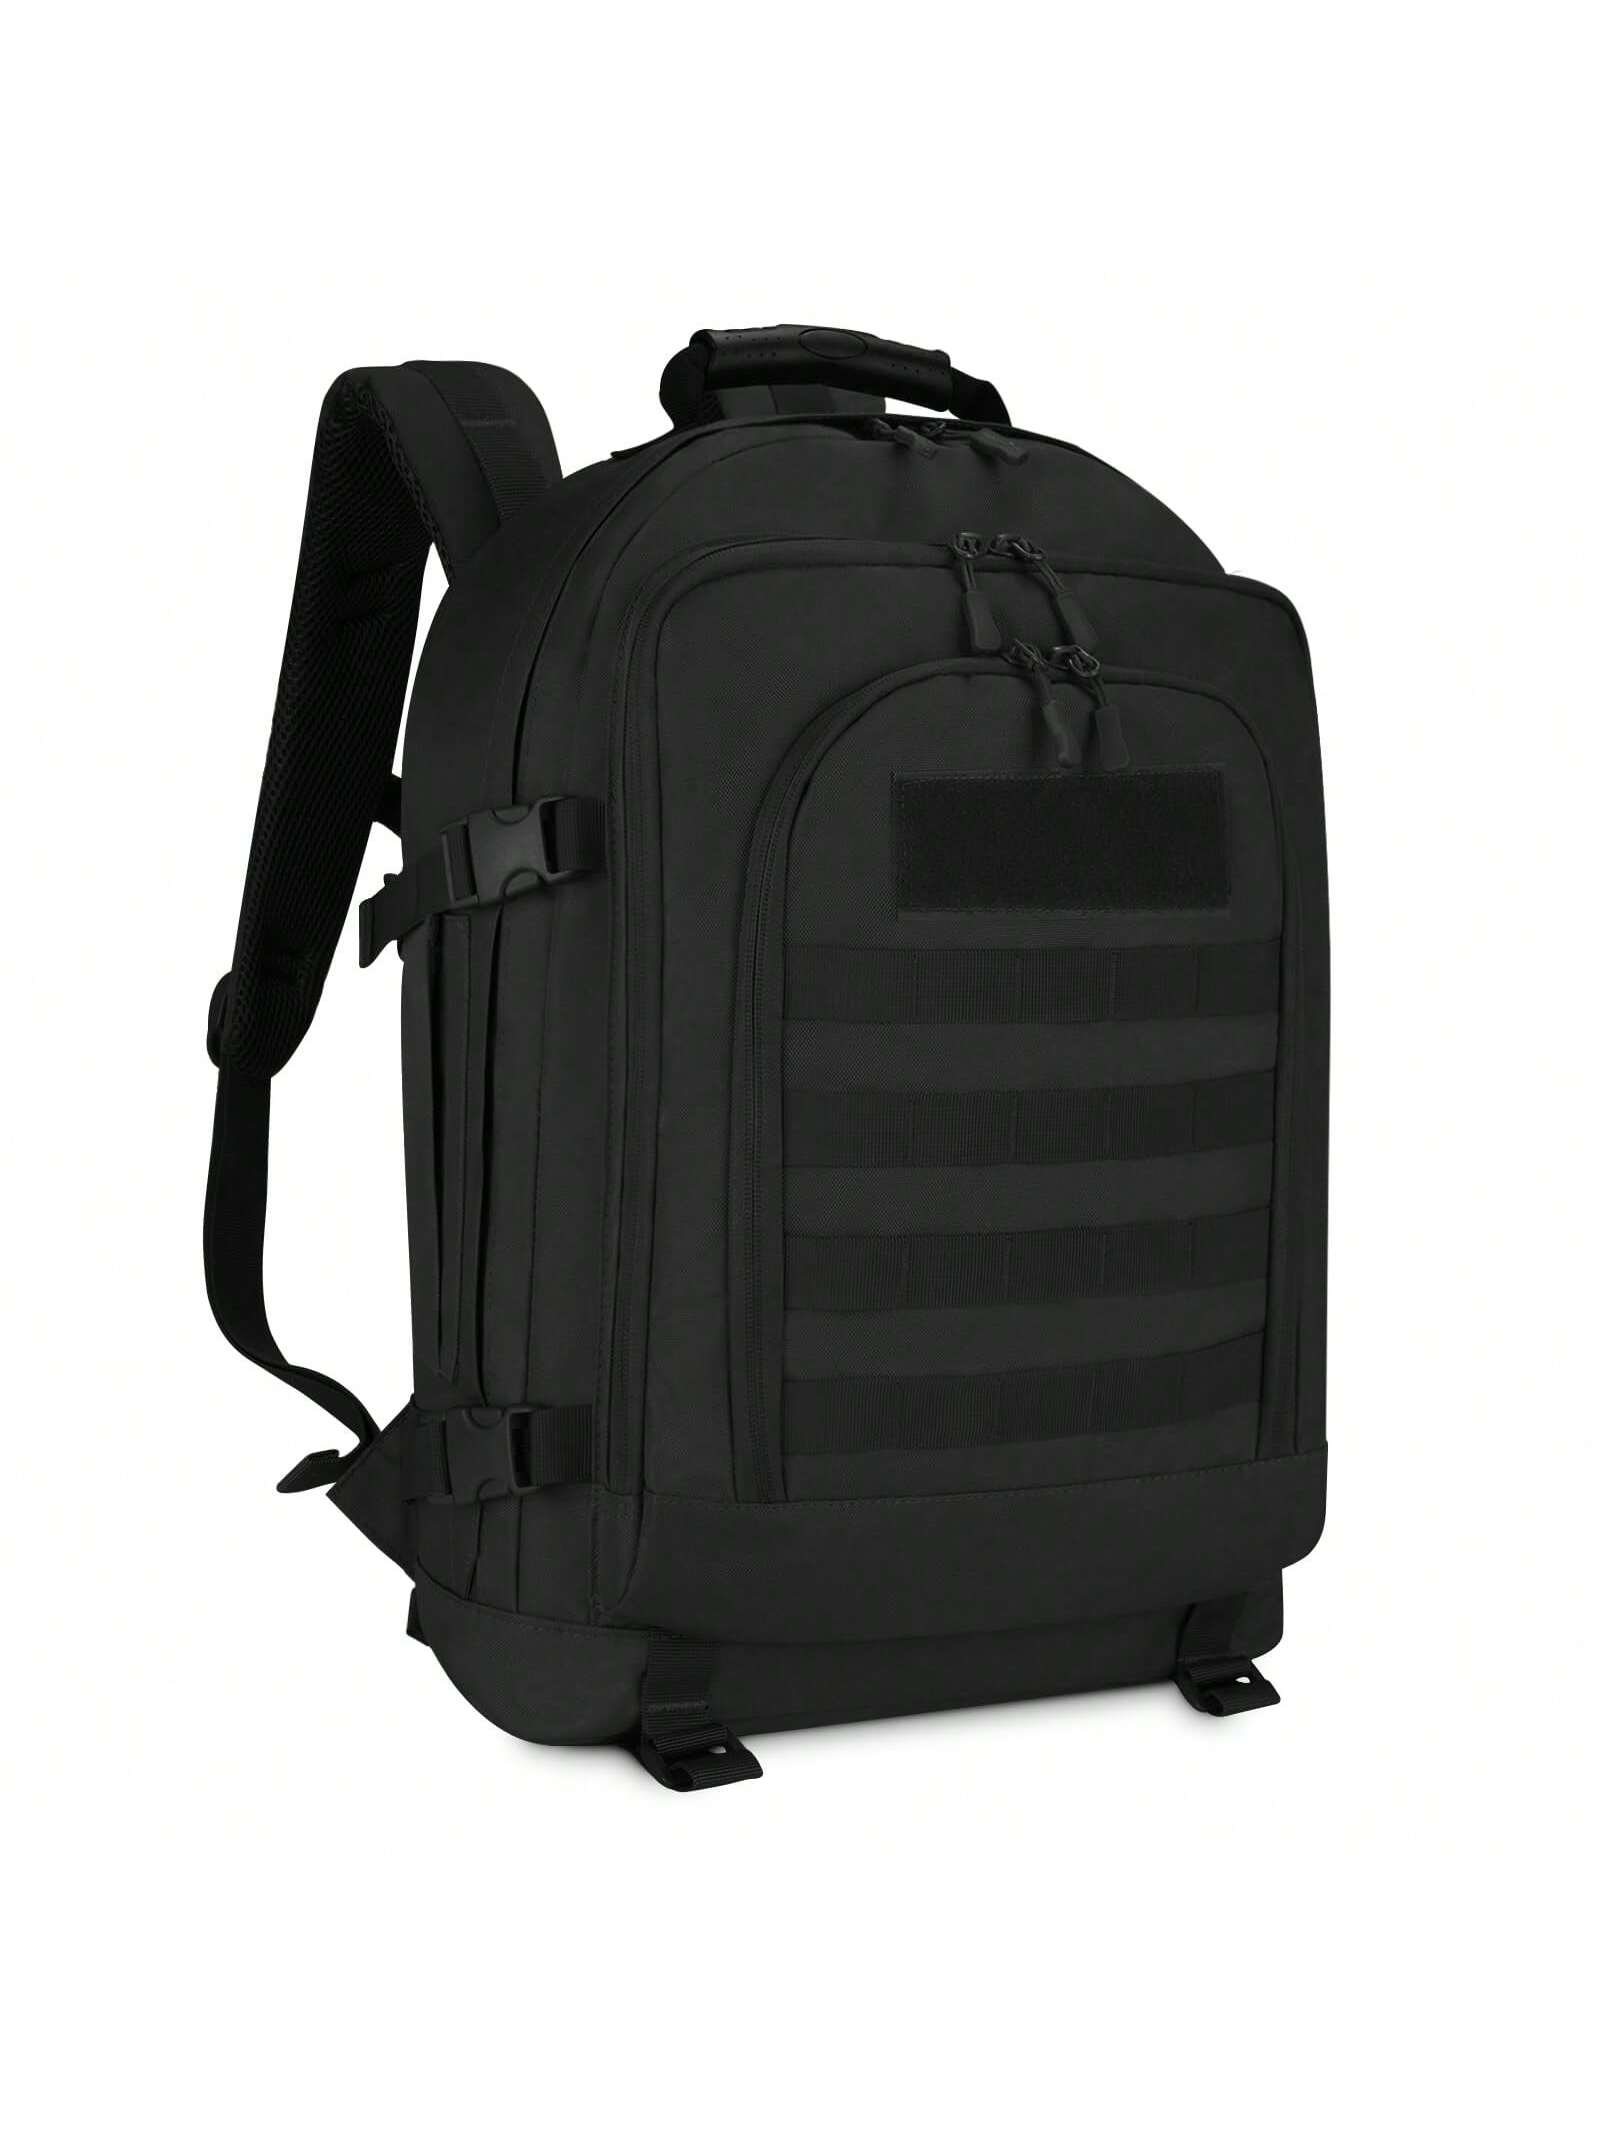 HUNTVP Тактический рюкзак MOLLE Охотничий рюкзак Gear Assault Pack 45L Расширяемый уличный рюкзак, черный тактический чехол для рации molle черный